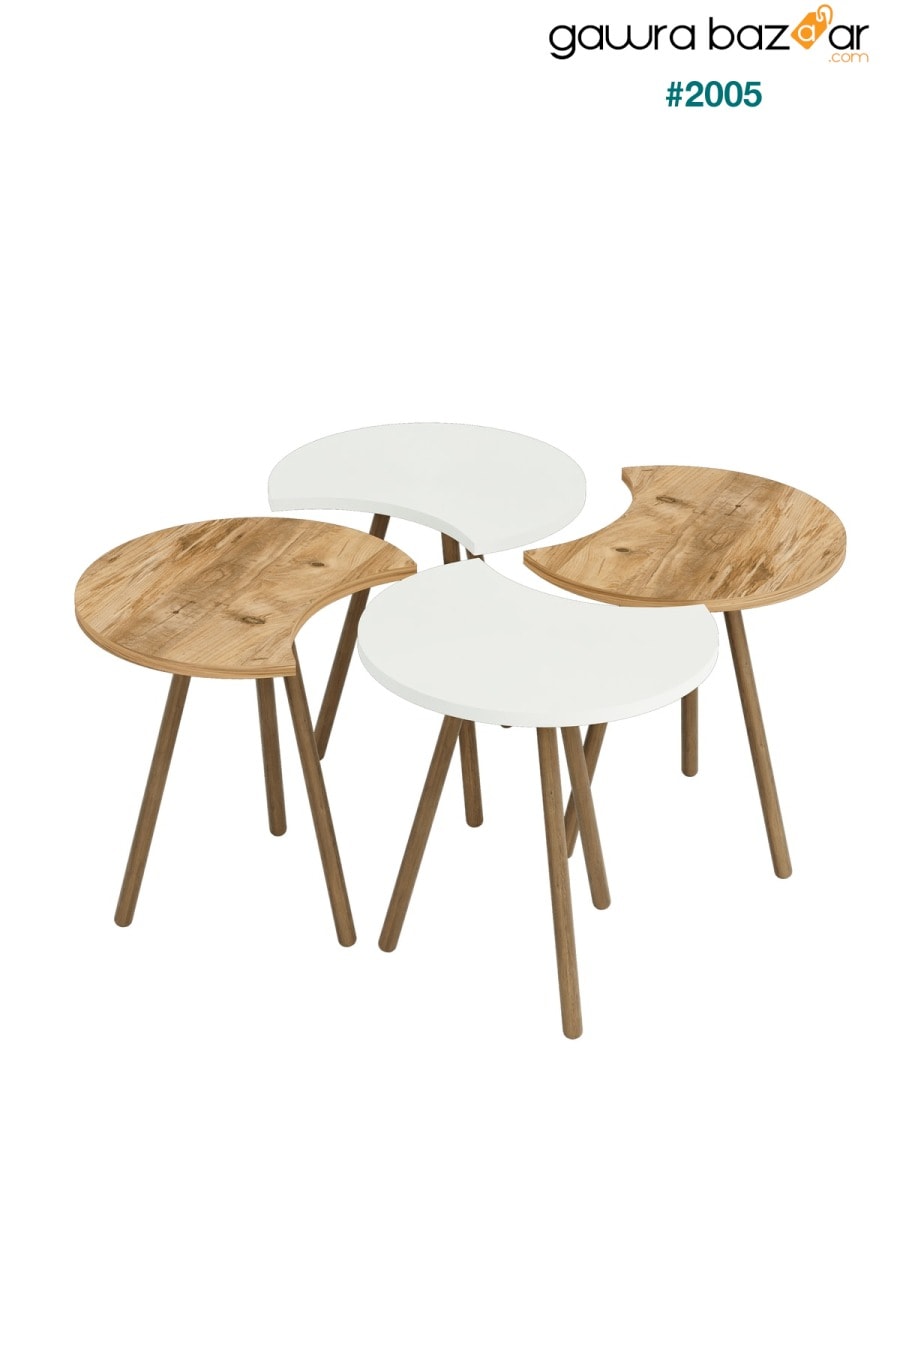 طاولة وسط بأربعة أرجل خشبية متداخلة متداخلة - أبيض أتلانتيكام interGO 1